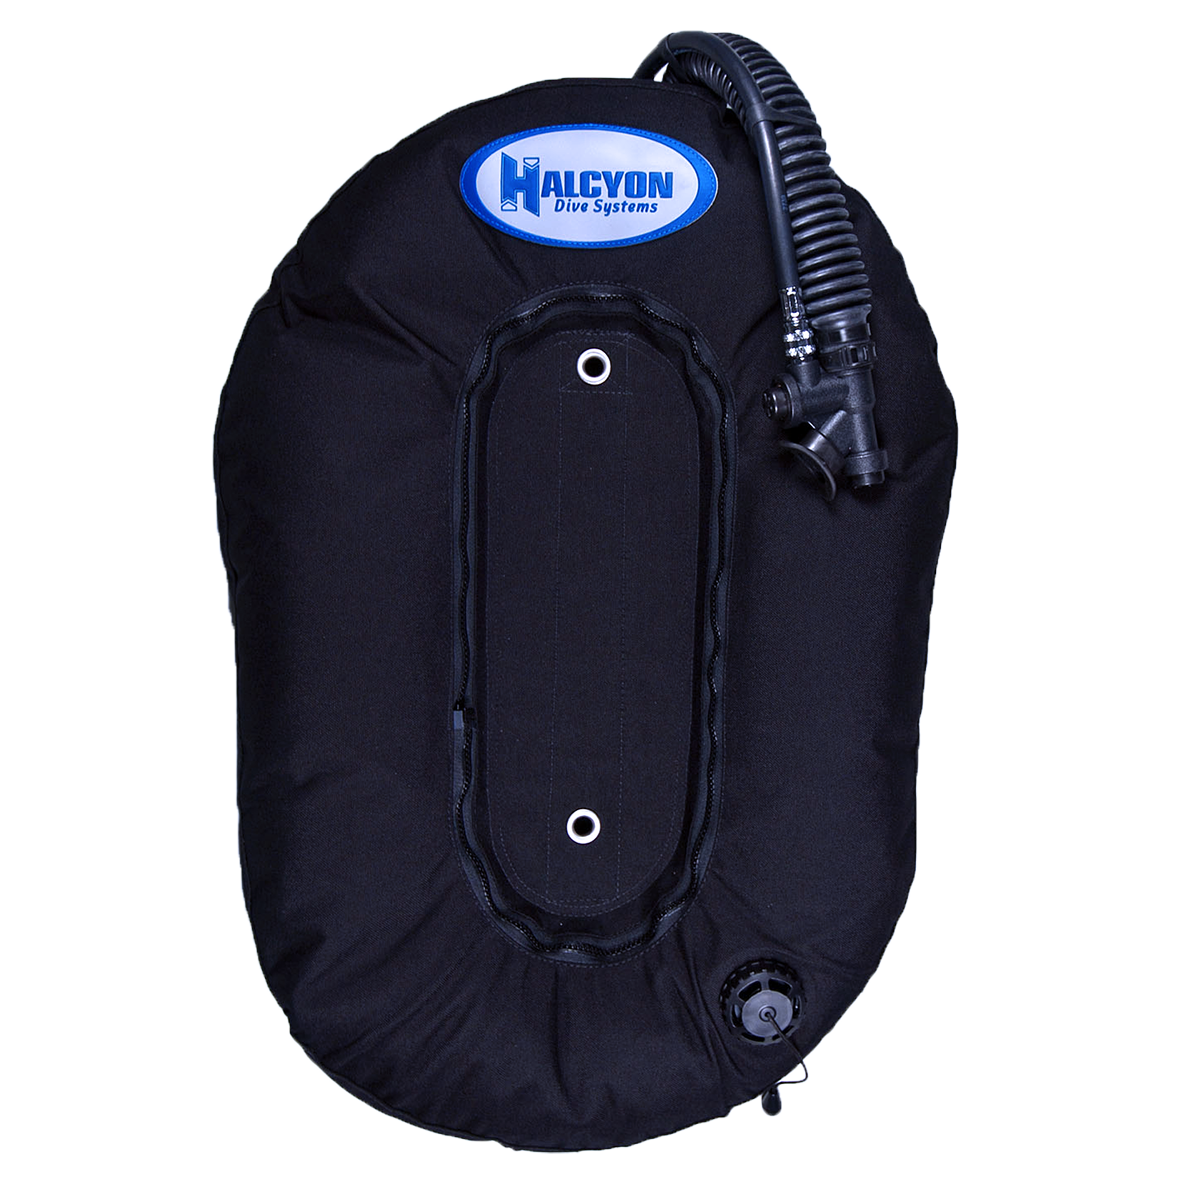 Halcyon Mesh Premium Gear Bag - The Diving Center